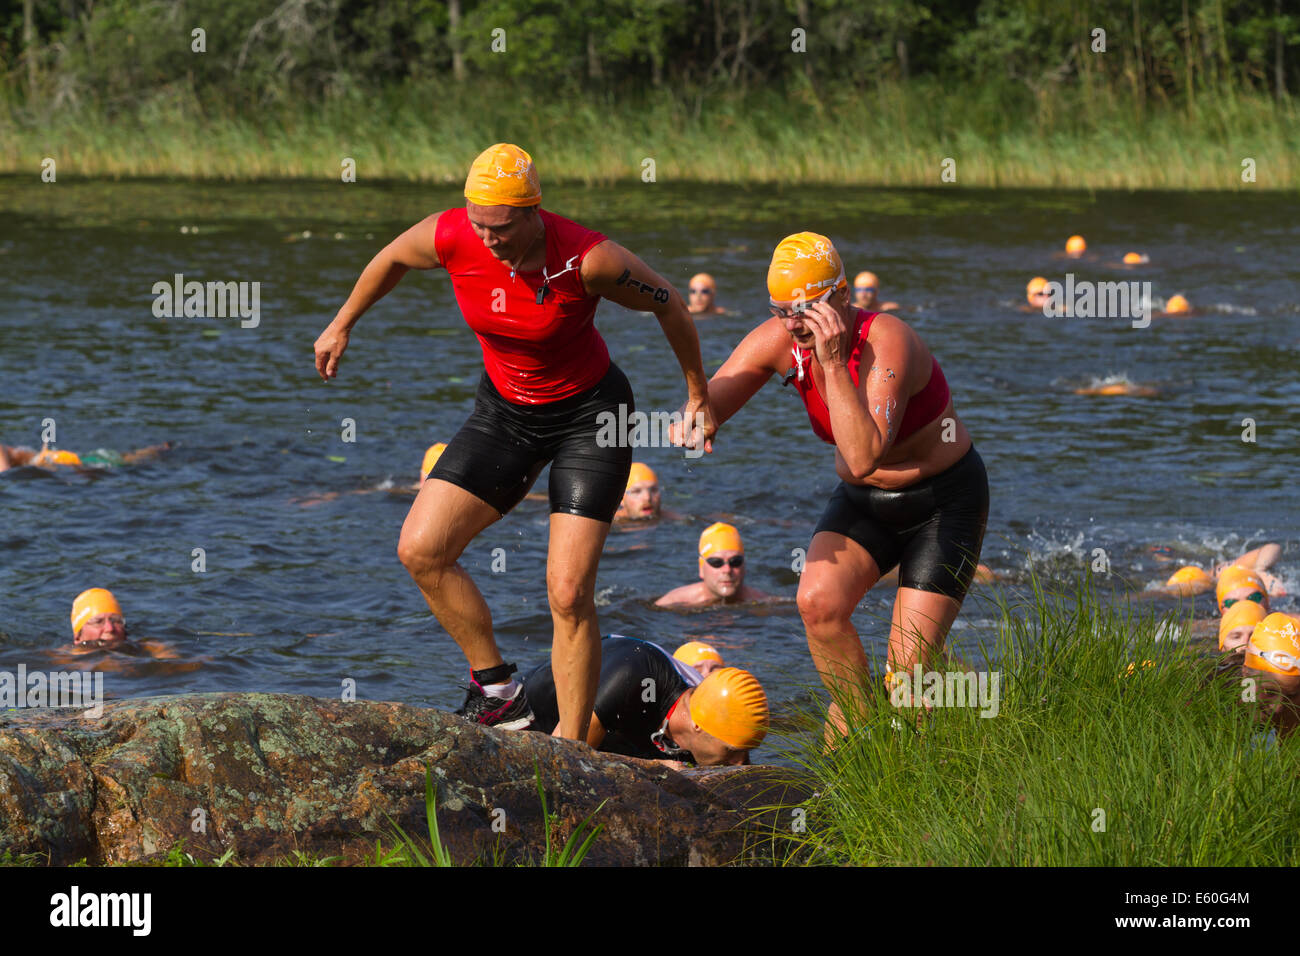 Les gens participant à un swimrun Ångaloppet, compétition où vous exécutez sur terre et se baigner dans les lacs et la mer à plusieurs reprises. Banque D'Images